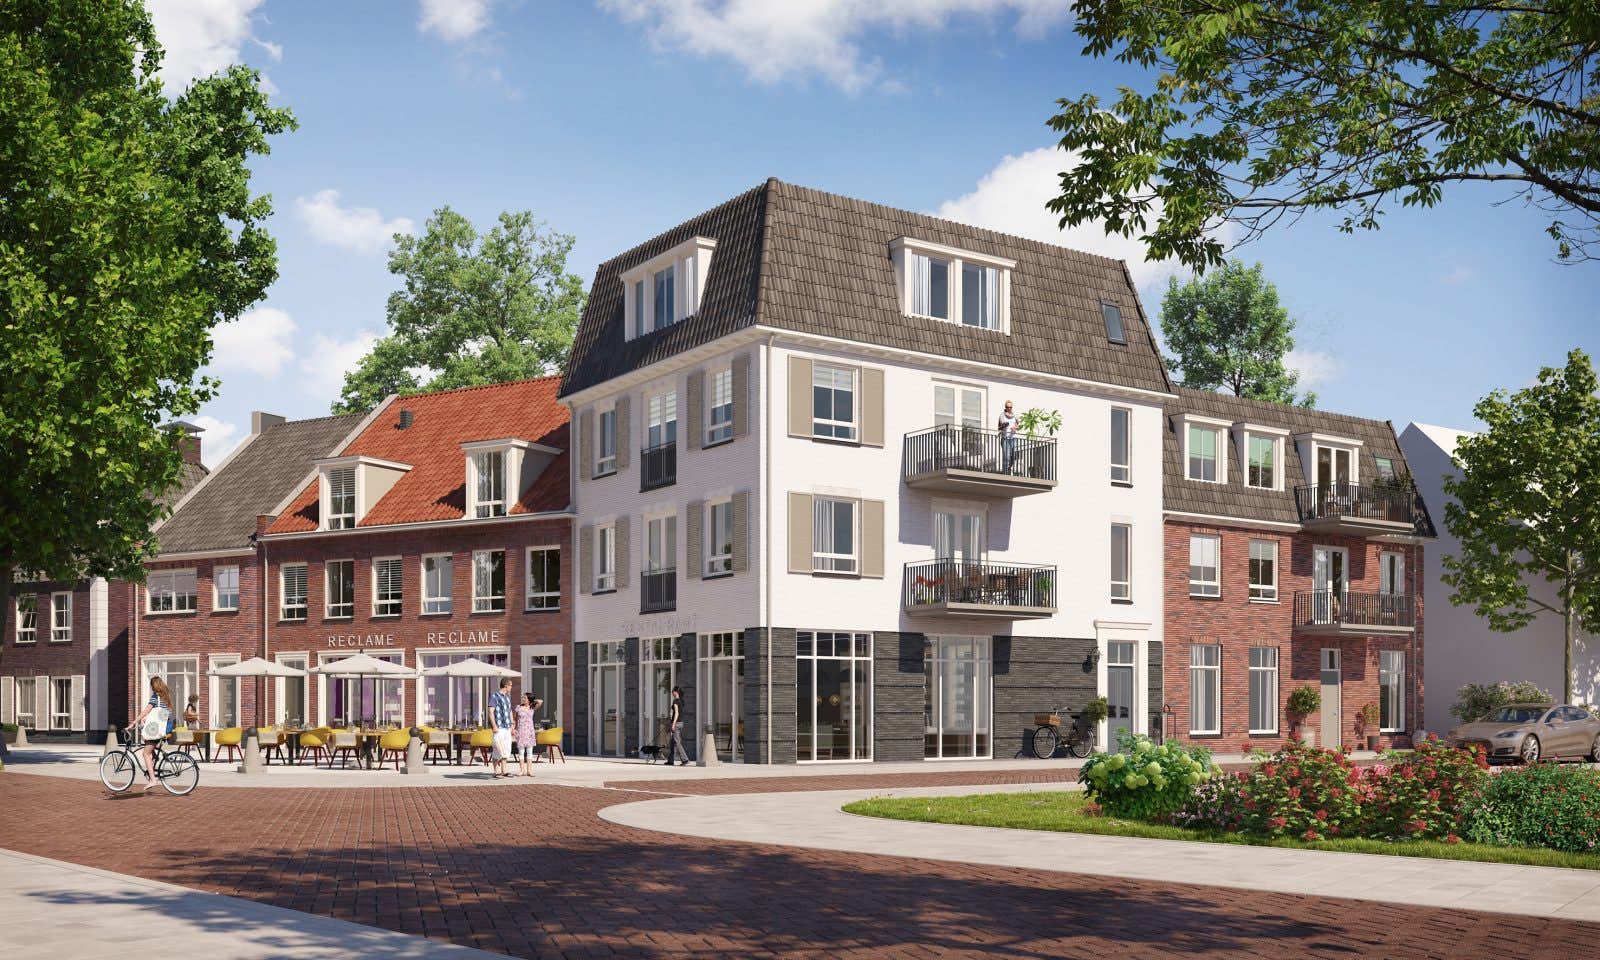 Binnenkort Start verkoop Wonen aan de Brink 28 woningen in Hoef en Haag - De Utrechtse Internet Courant